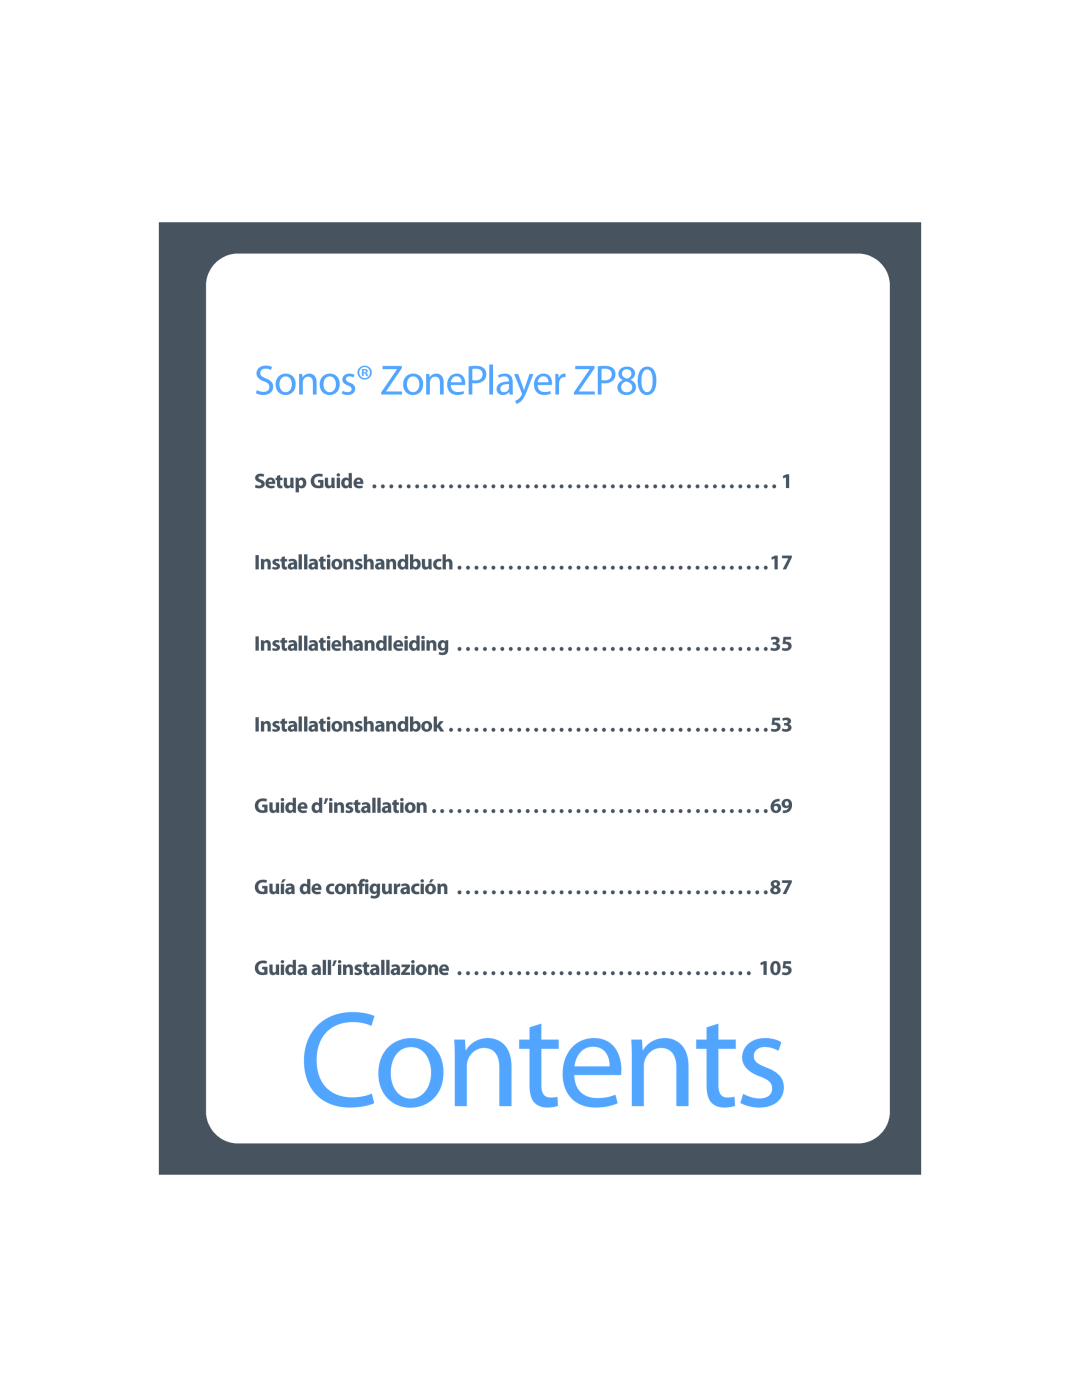 Sonos setup guide Contents, Sonos ZonePlayer ZP80 